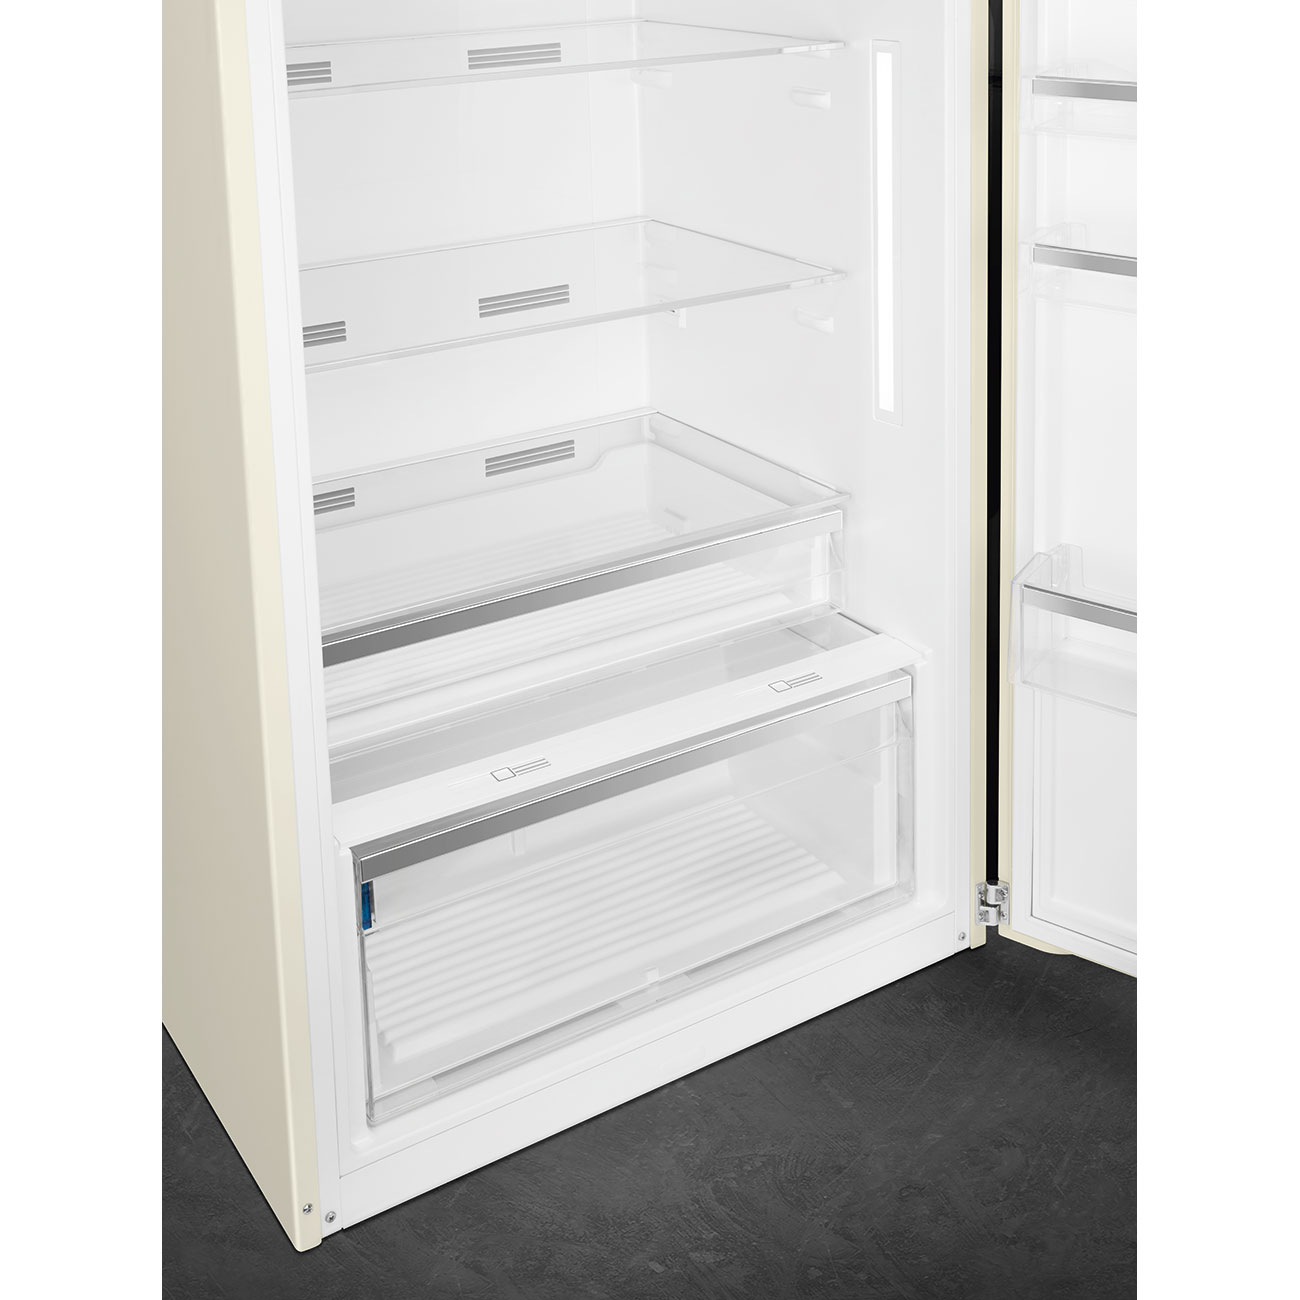 Cream refrigerator - Smeg_8